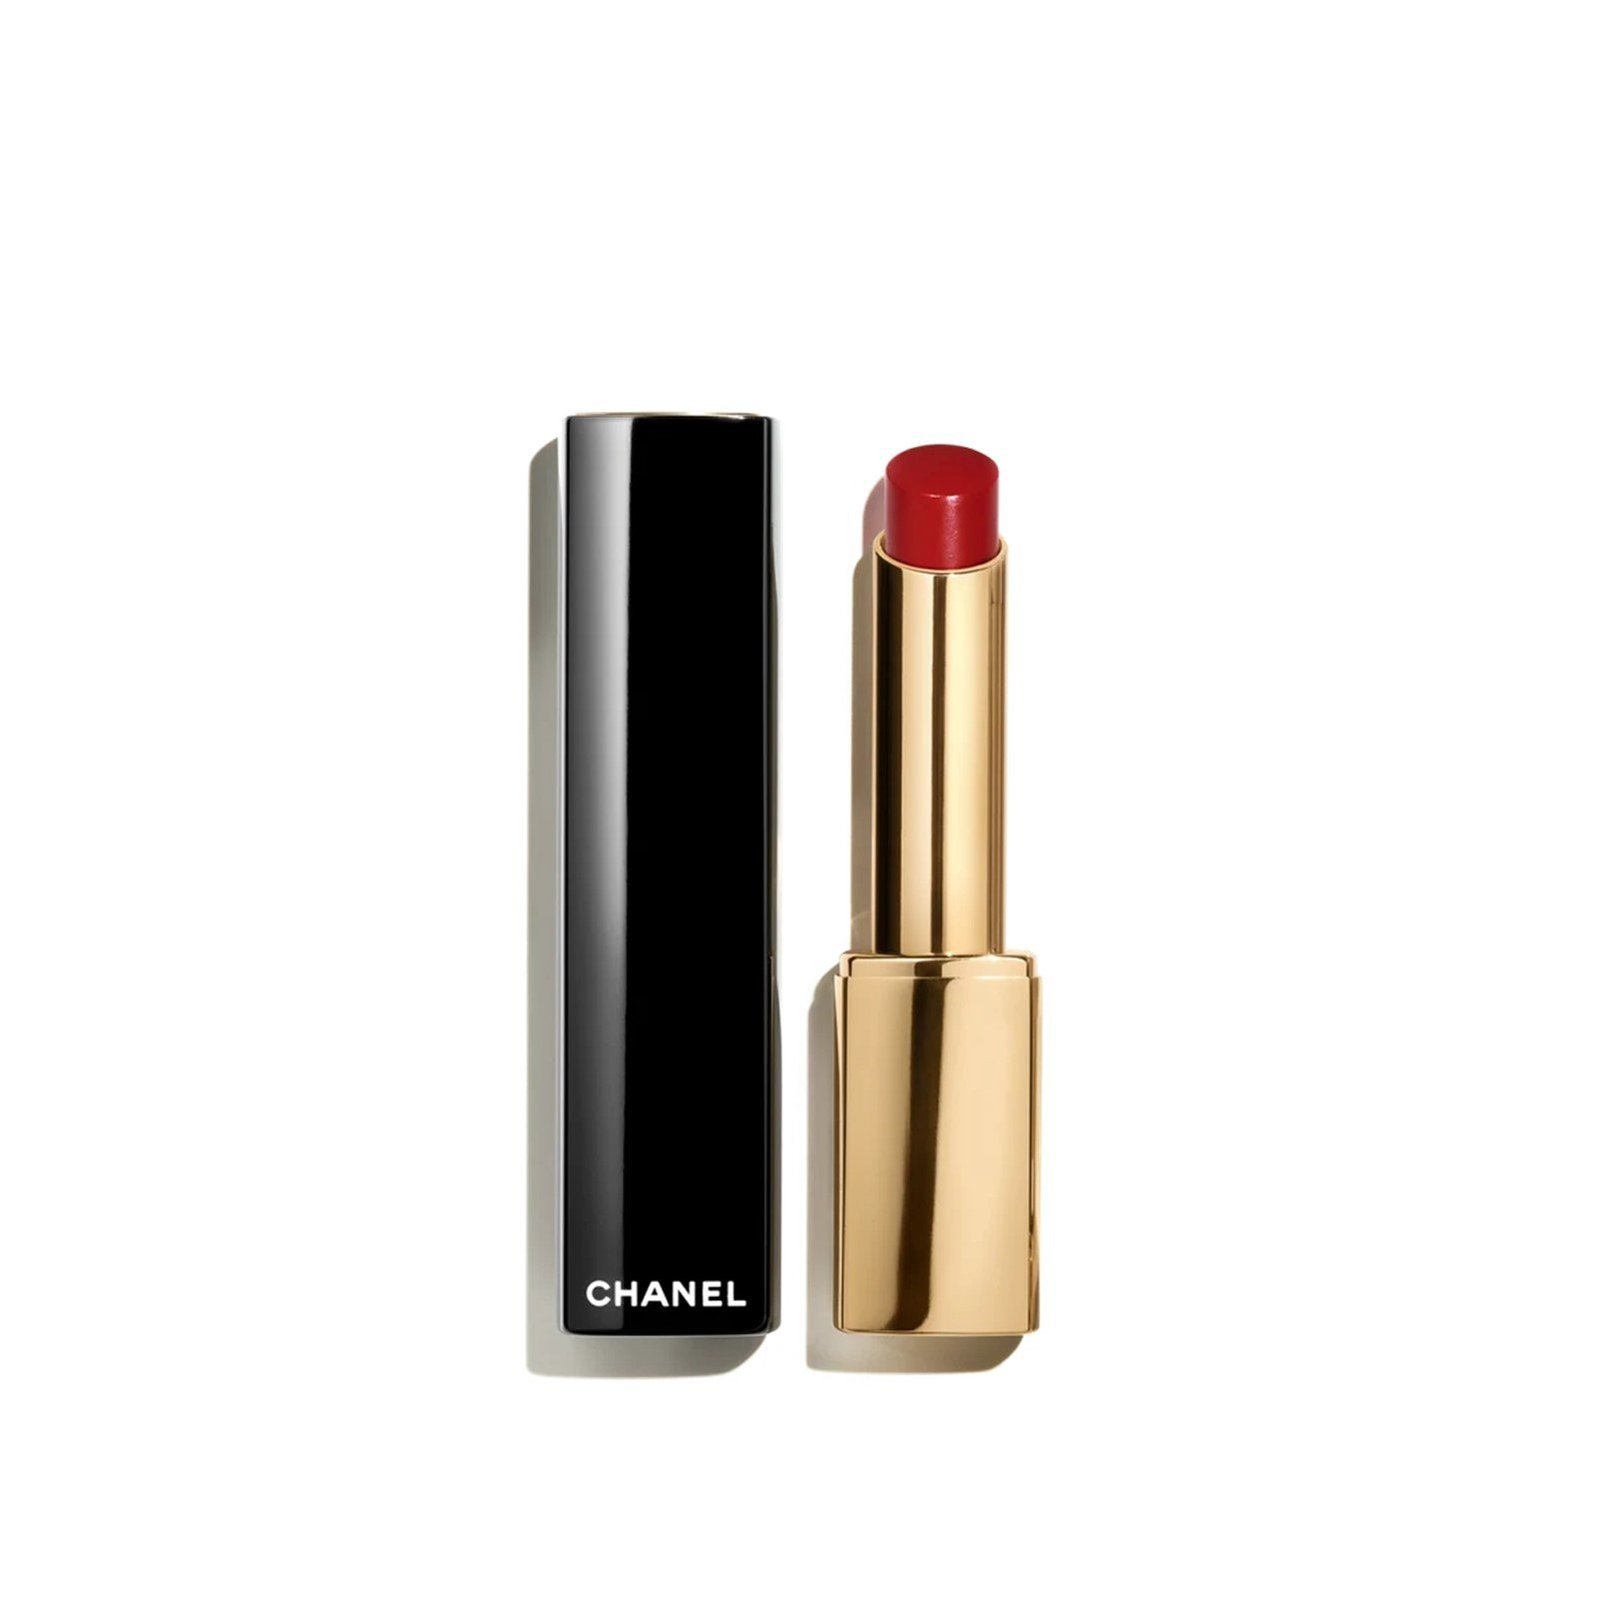 CHANEL Rouge Allure L'Extrait High-Intensity Lip Colour 854 Rouge Puissant 2g (0.07 oz)